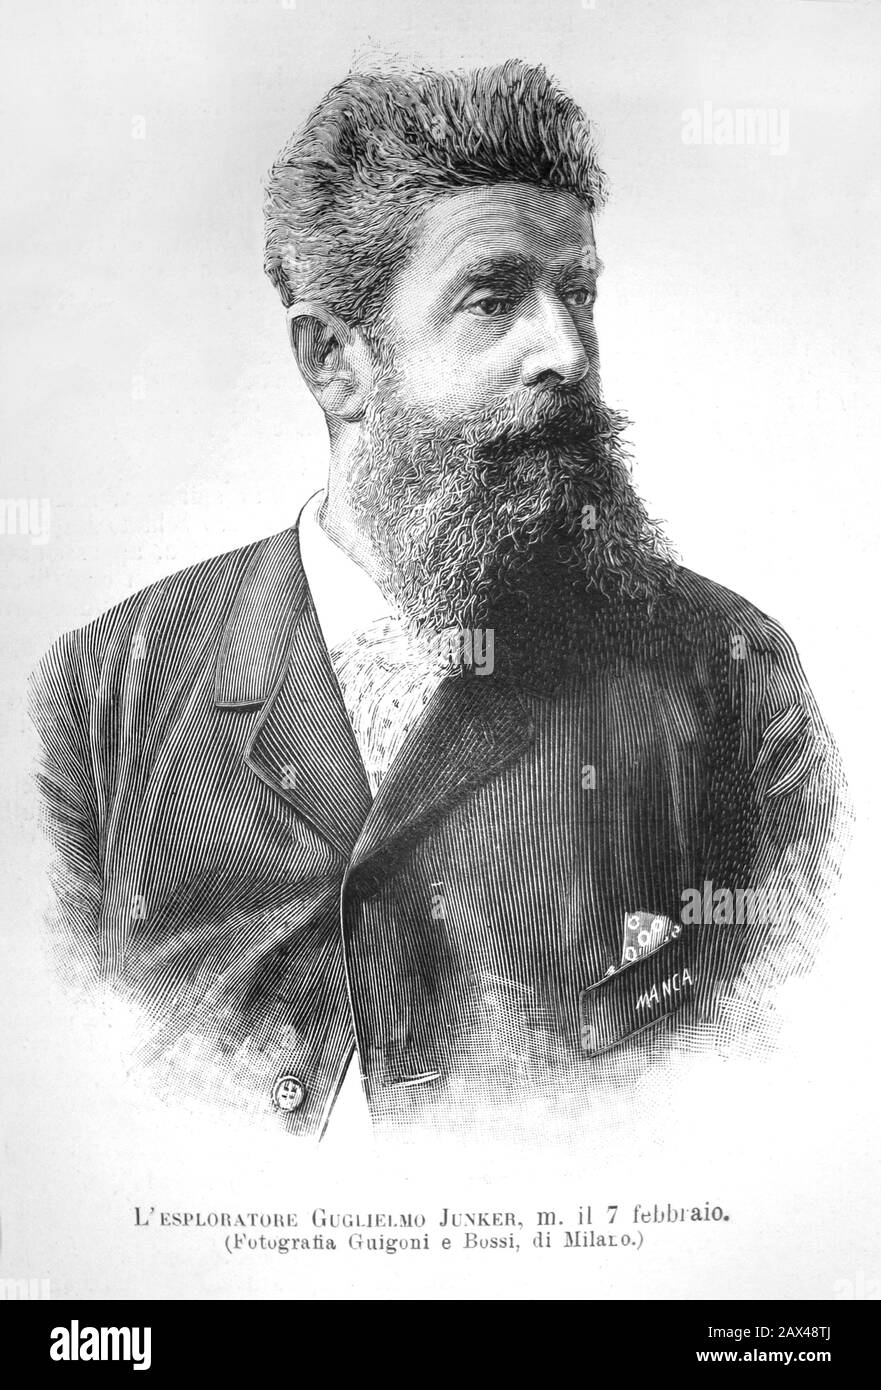 1892 :  The russian esplorer of Africa WILHELM JUNKER ( 1840 - 1892 ). He was of German descent. - ESPLORATORE - esplorazioni - GUGLIELMO - Vasilij Vasilevic Junker - AFRICA NERA - NILE - NILO - CONGO - UGANDA - ritratto - portrait - incisione - engraving - beard - barba ----  Archivio GBB Stock Photo